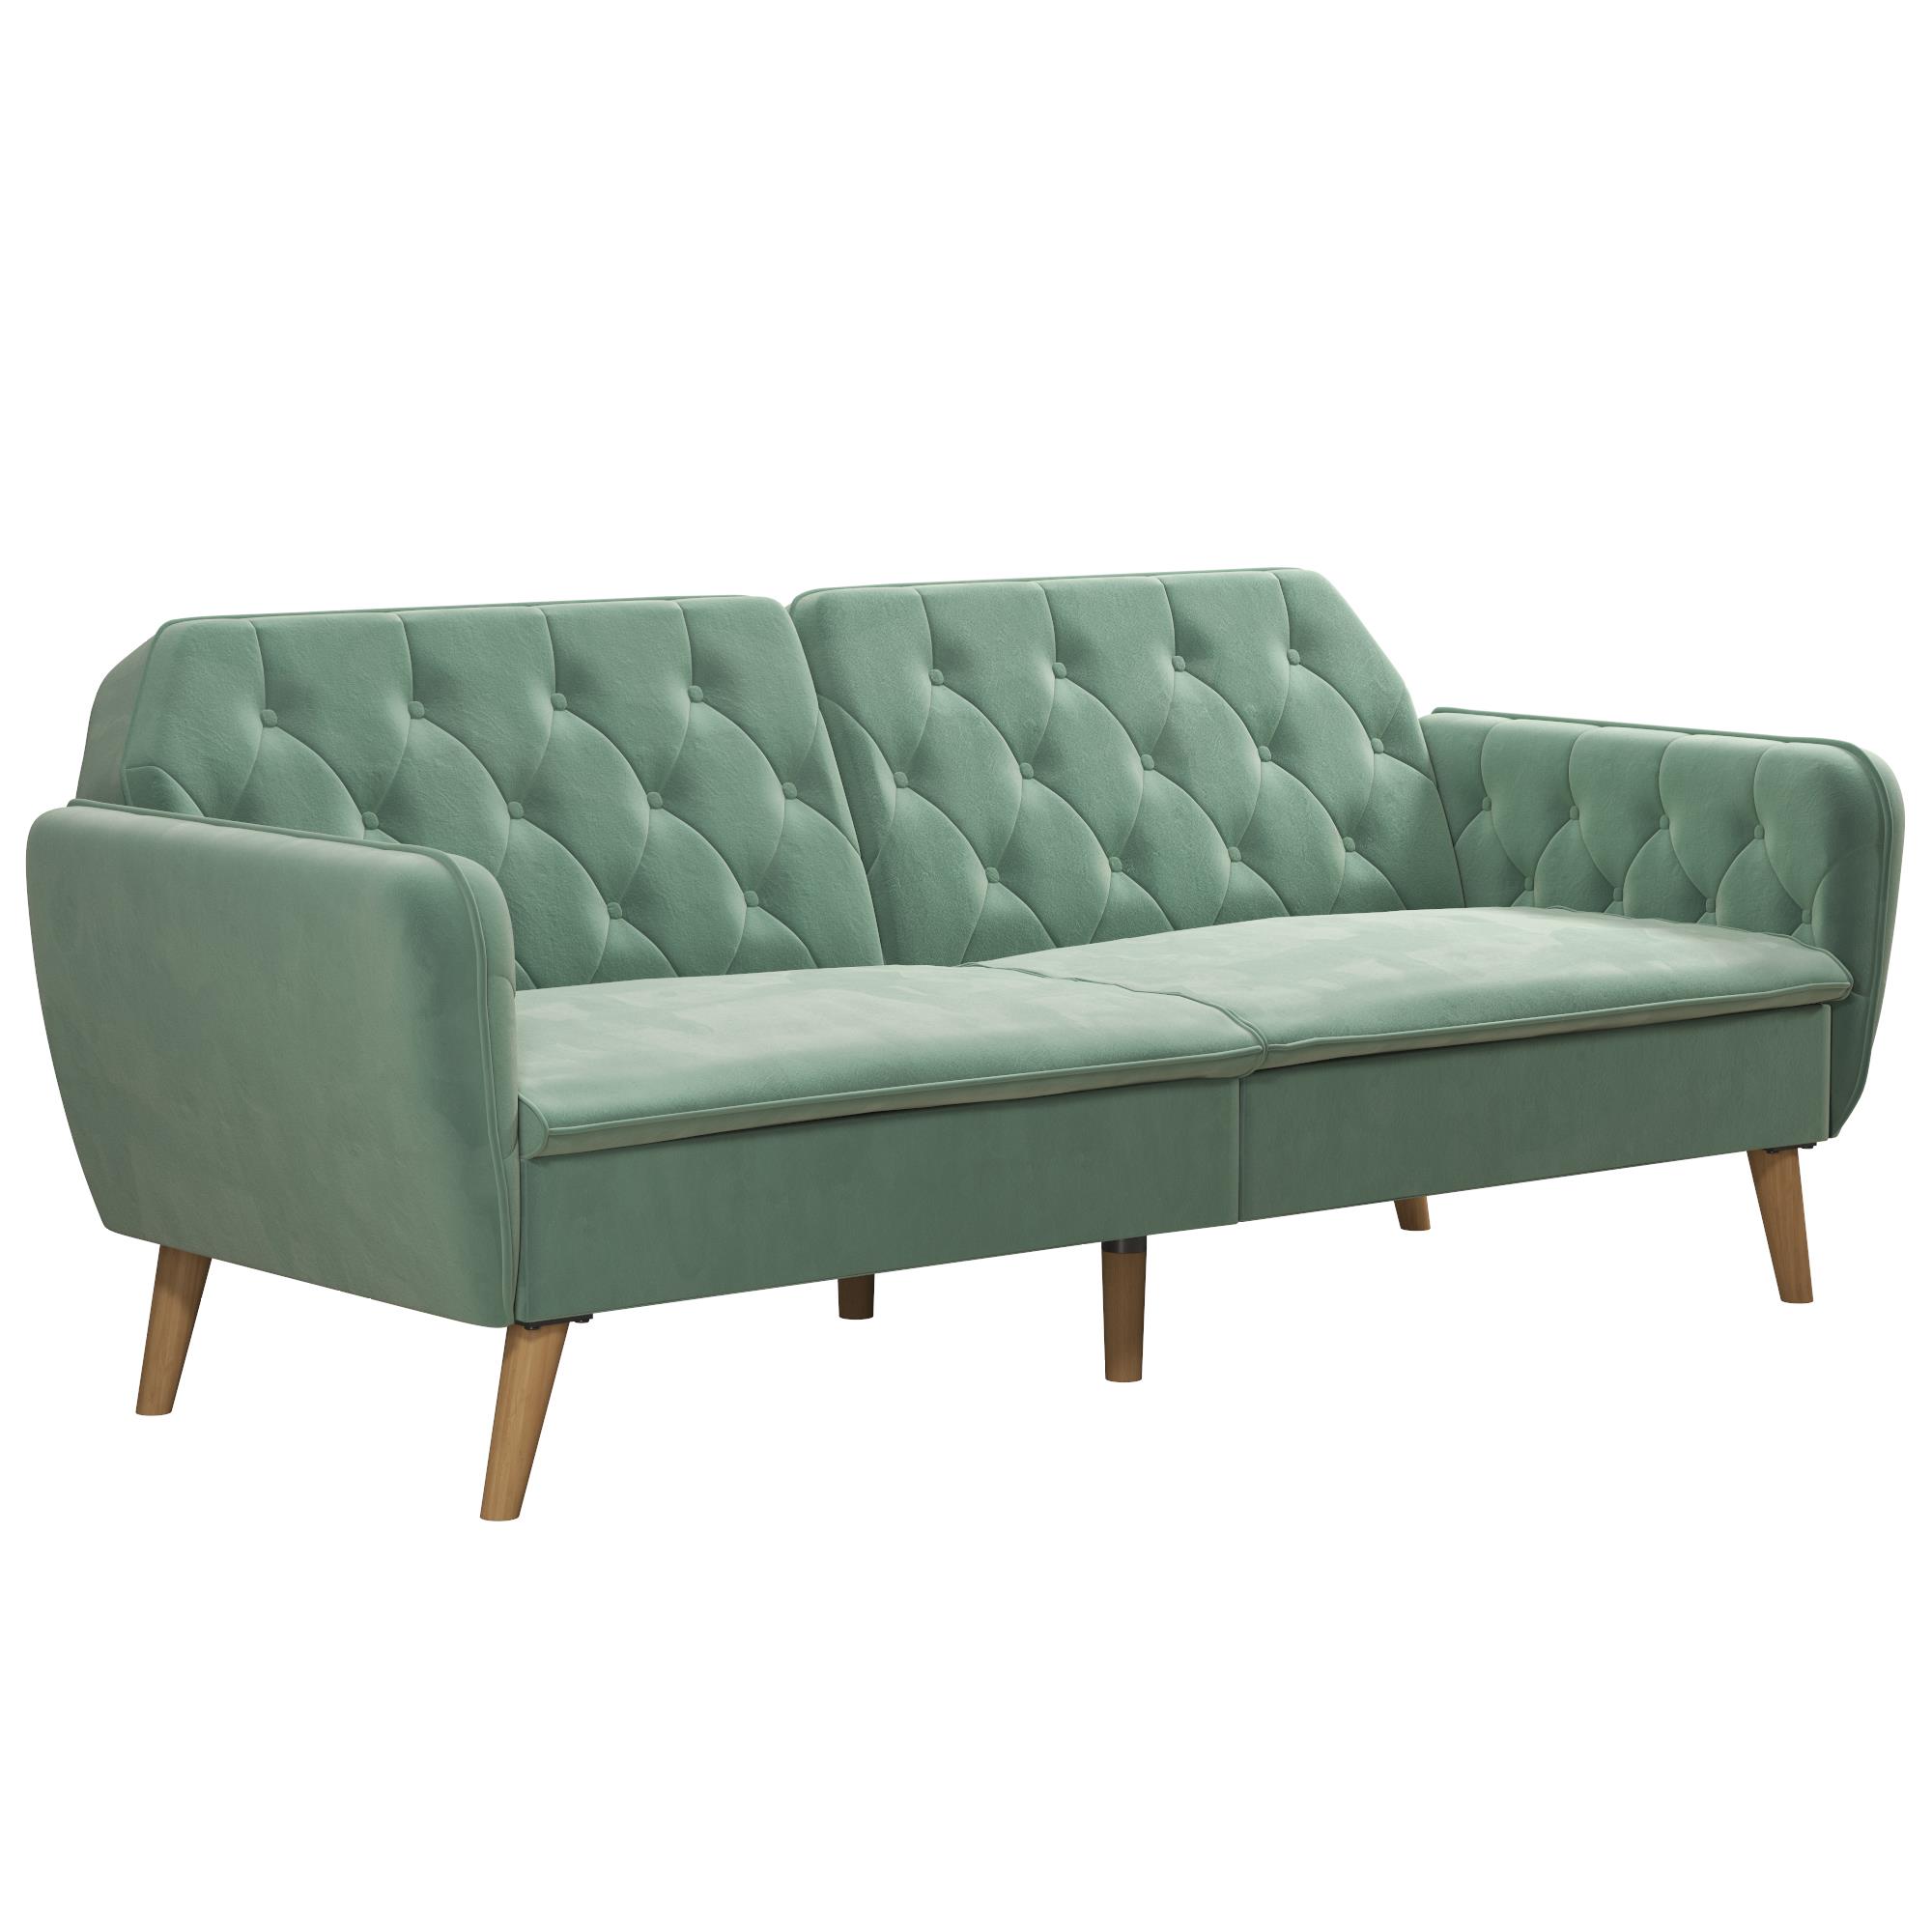 Novogratz Tallulah Memory Foam Futon and Sofa Bed, Light Green Velvet - image 5 of 17